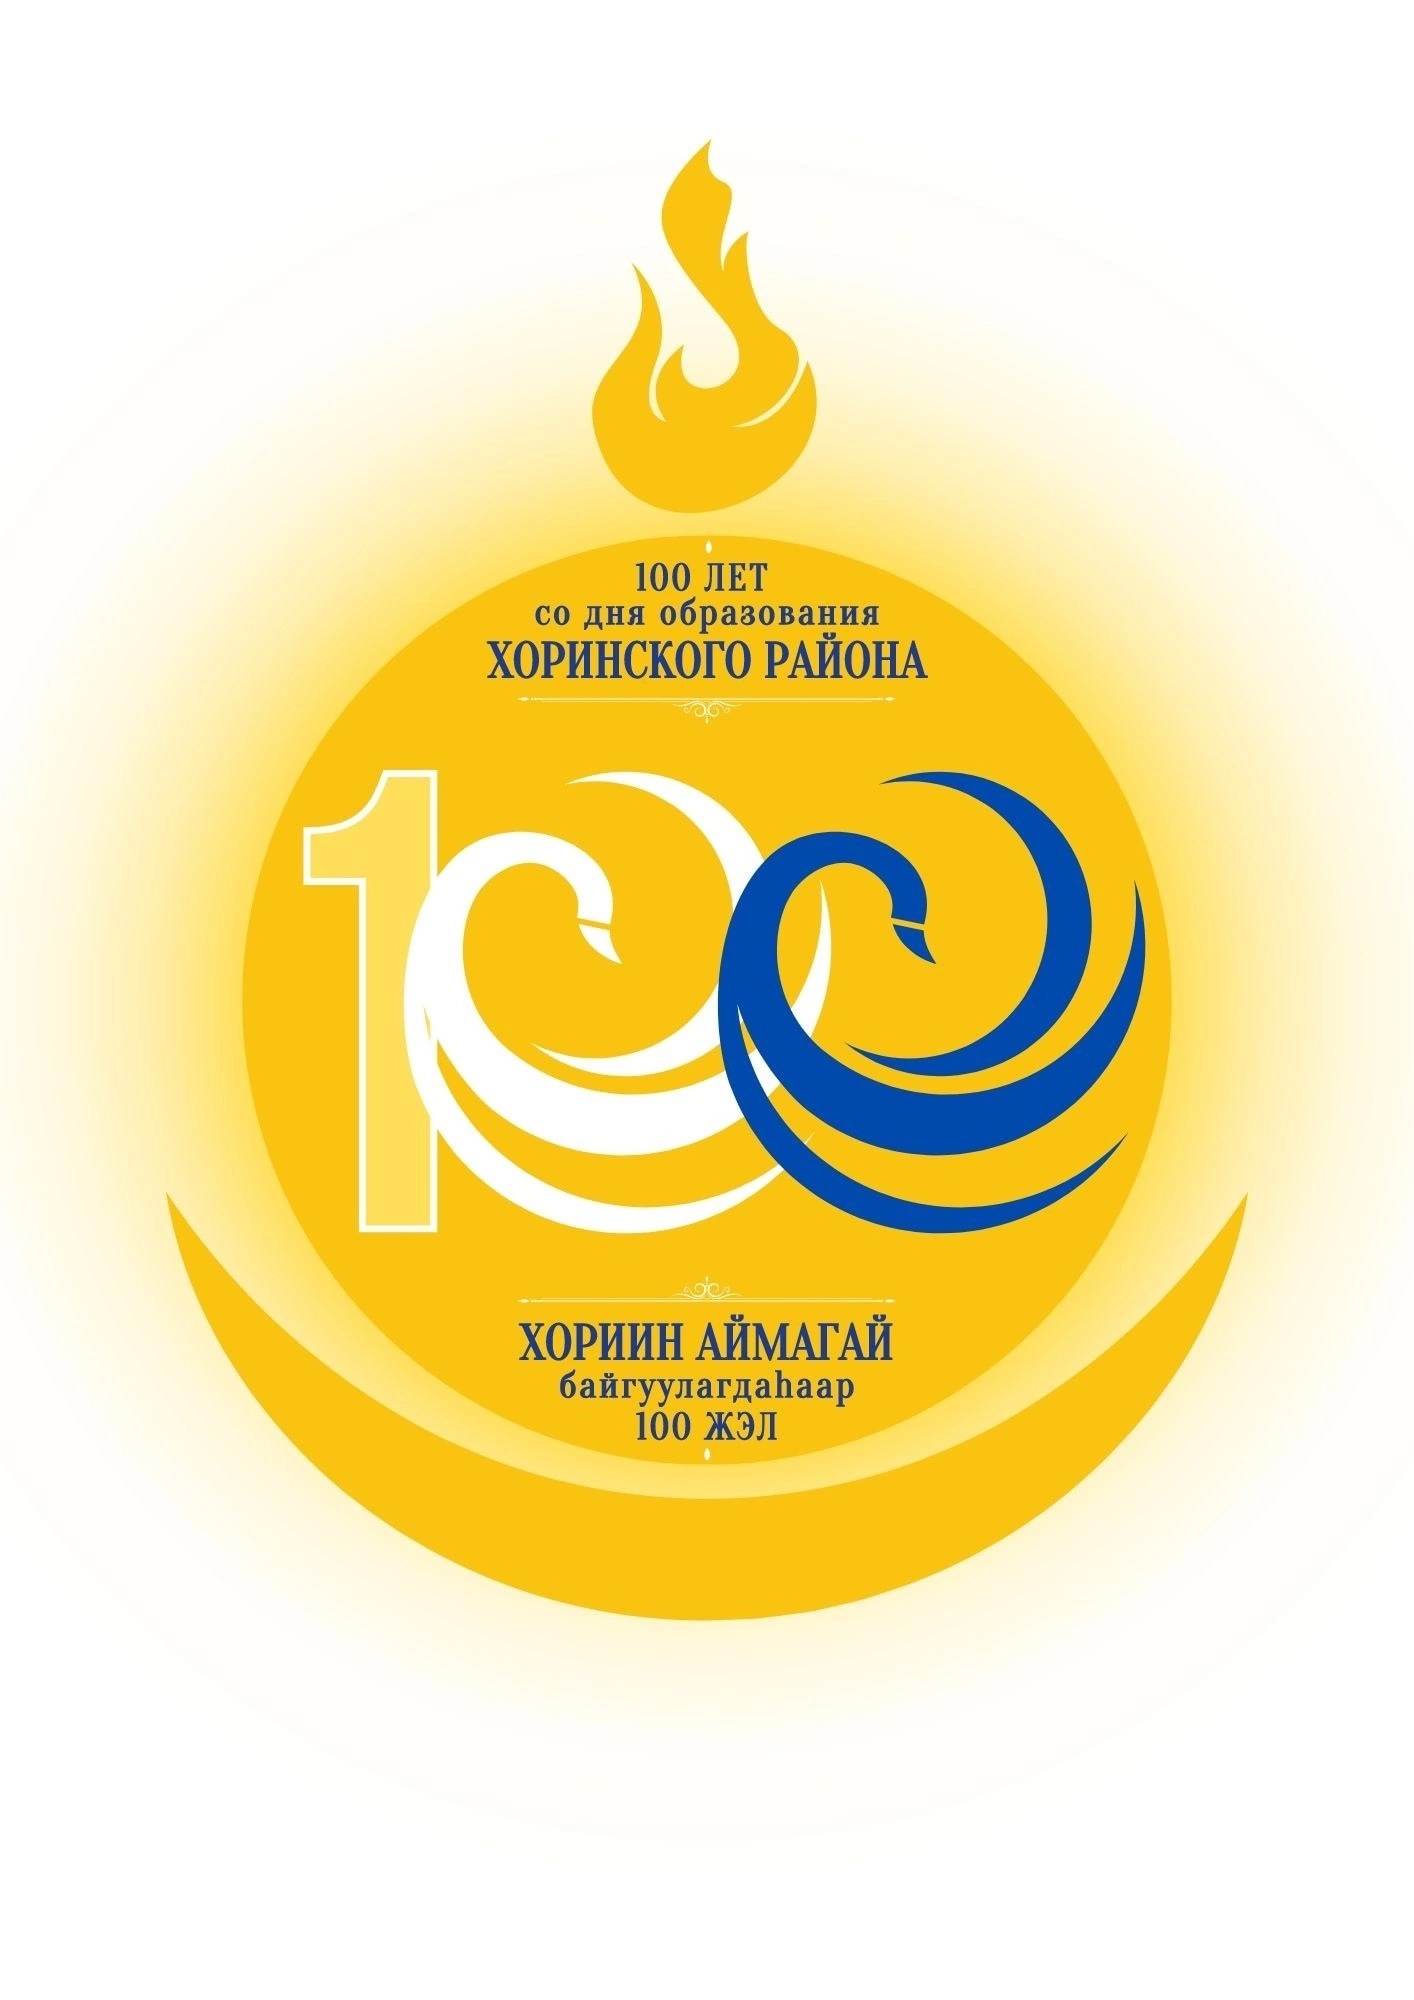 Фото В Бурятии определились с логотипом к 100-летию Хоринского района